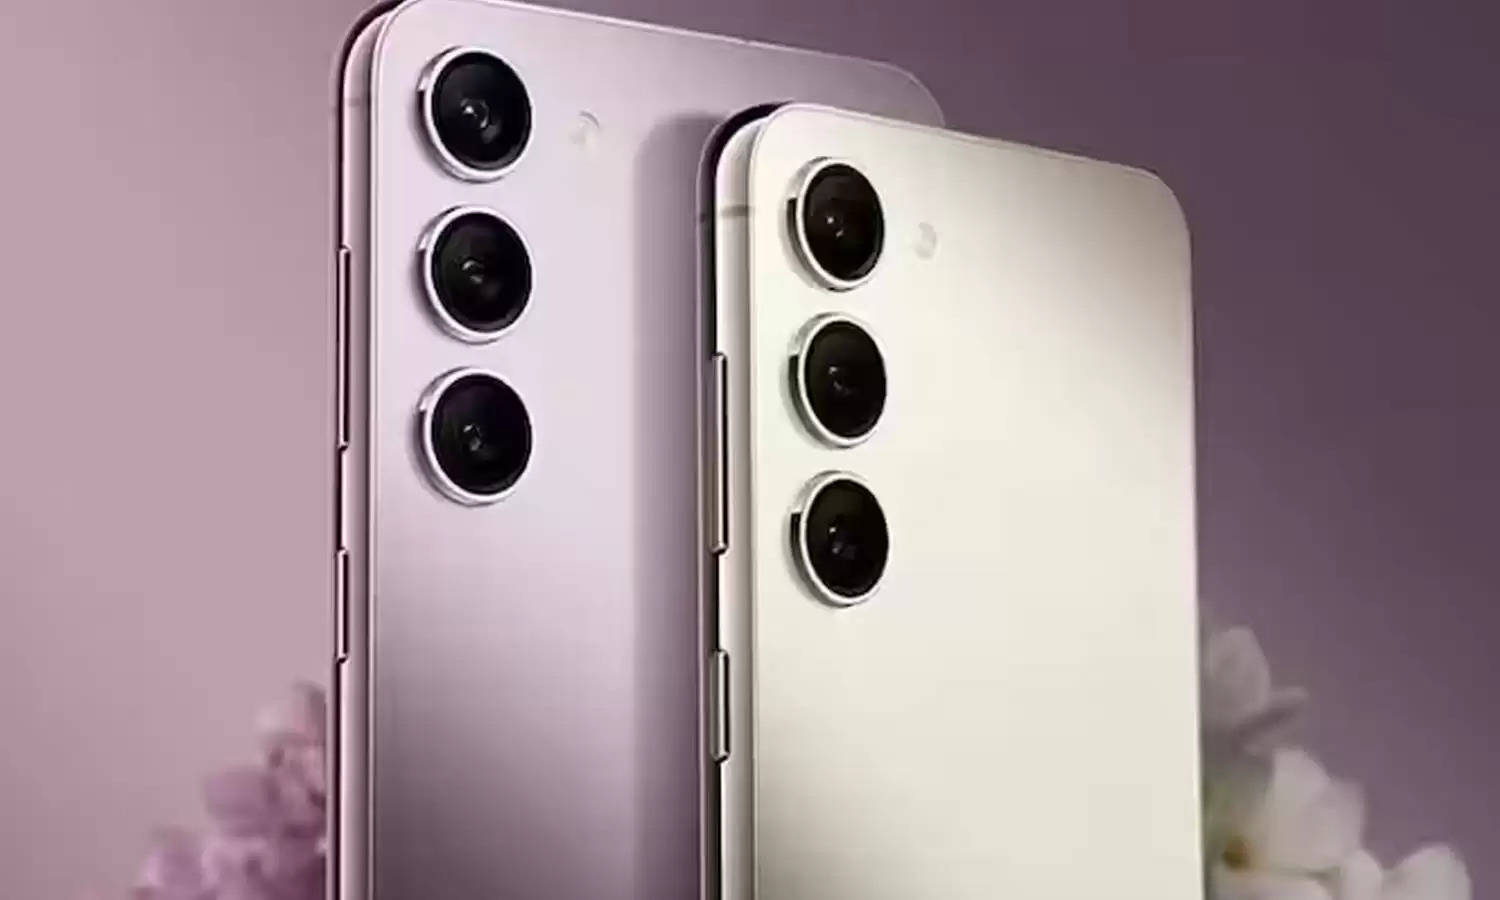 लांच होने वाला है Samsung का सबसे हल्का फोन, बेहतरीन कैमरा क्वालिटी के साथ मिलेंगे शानदार फीचर्स 